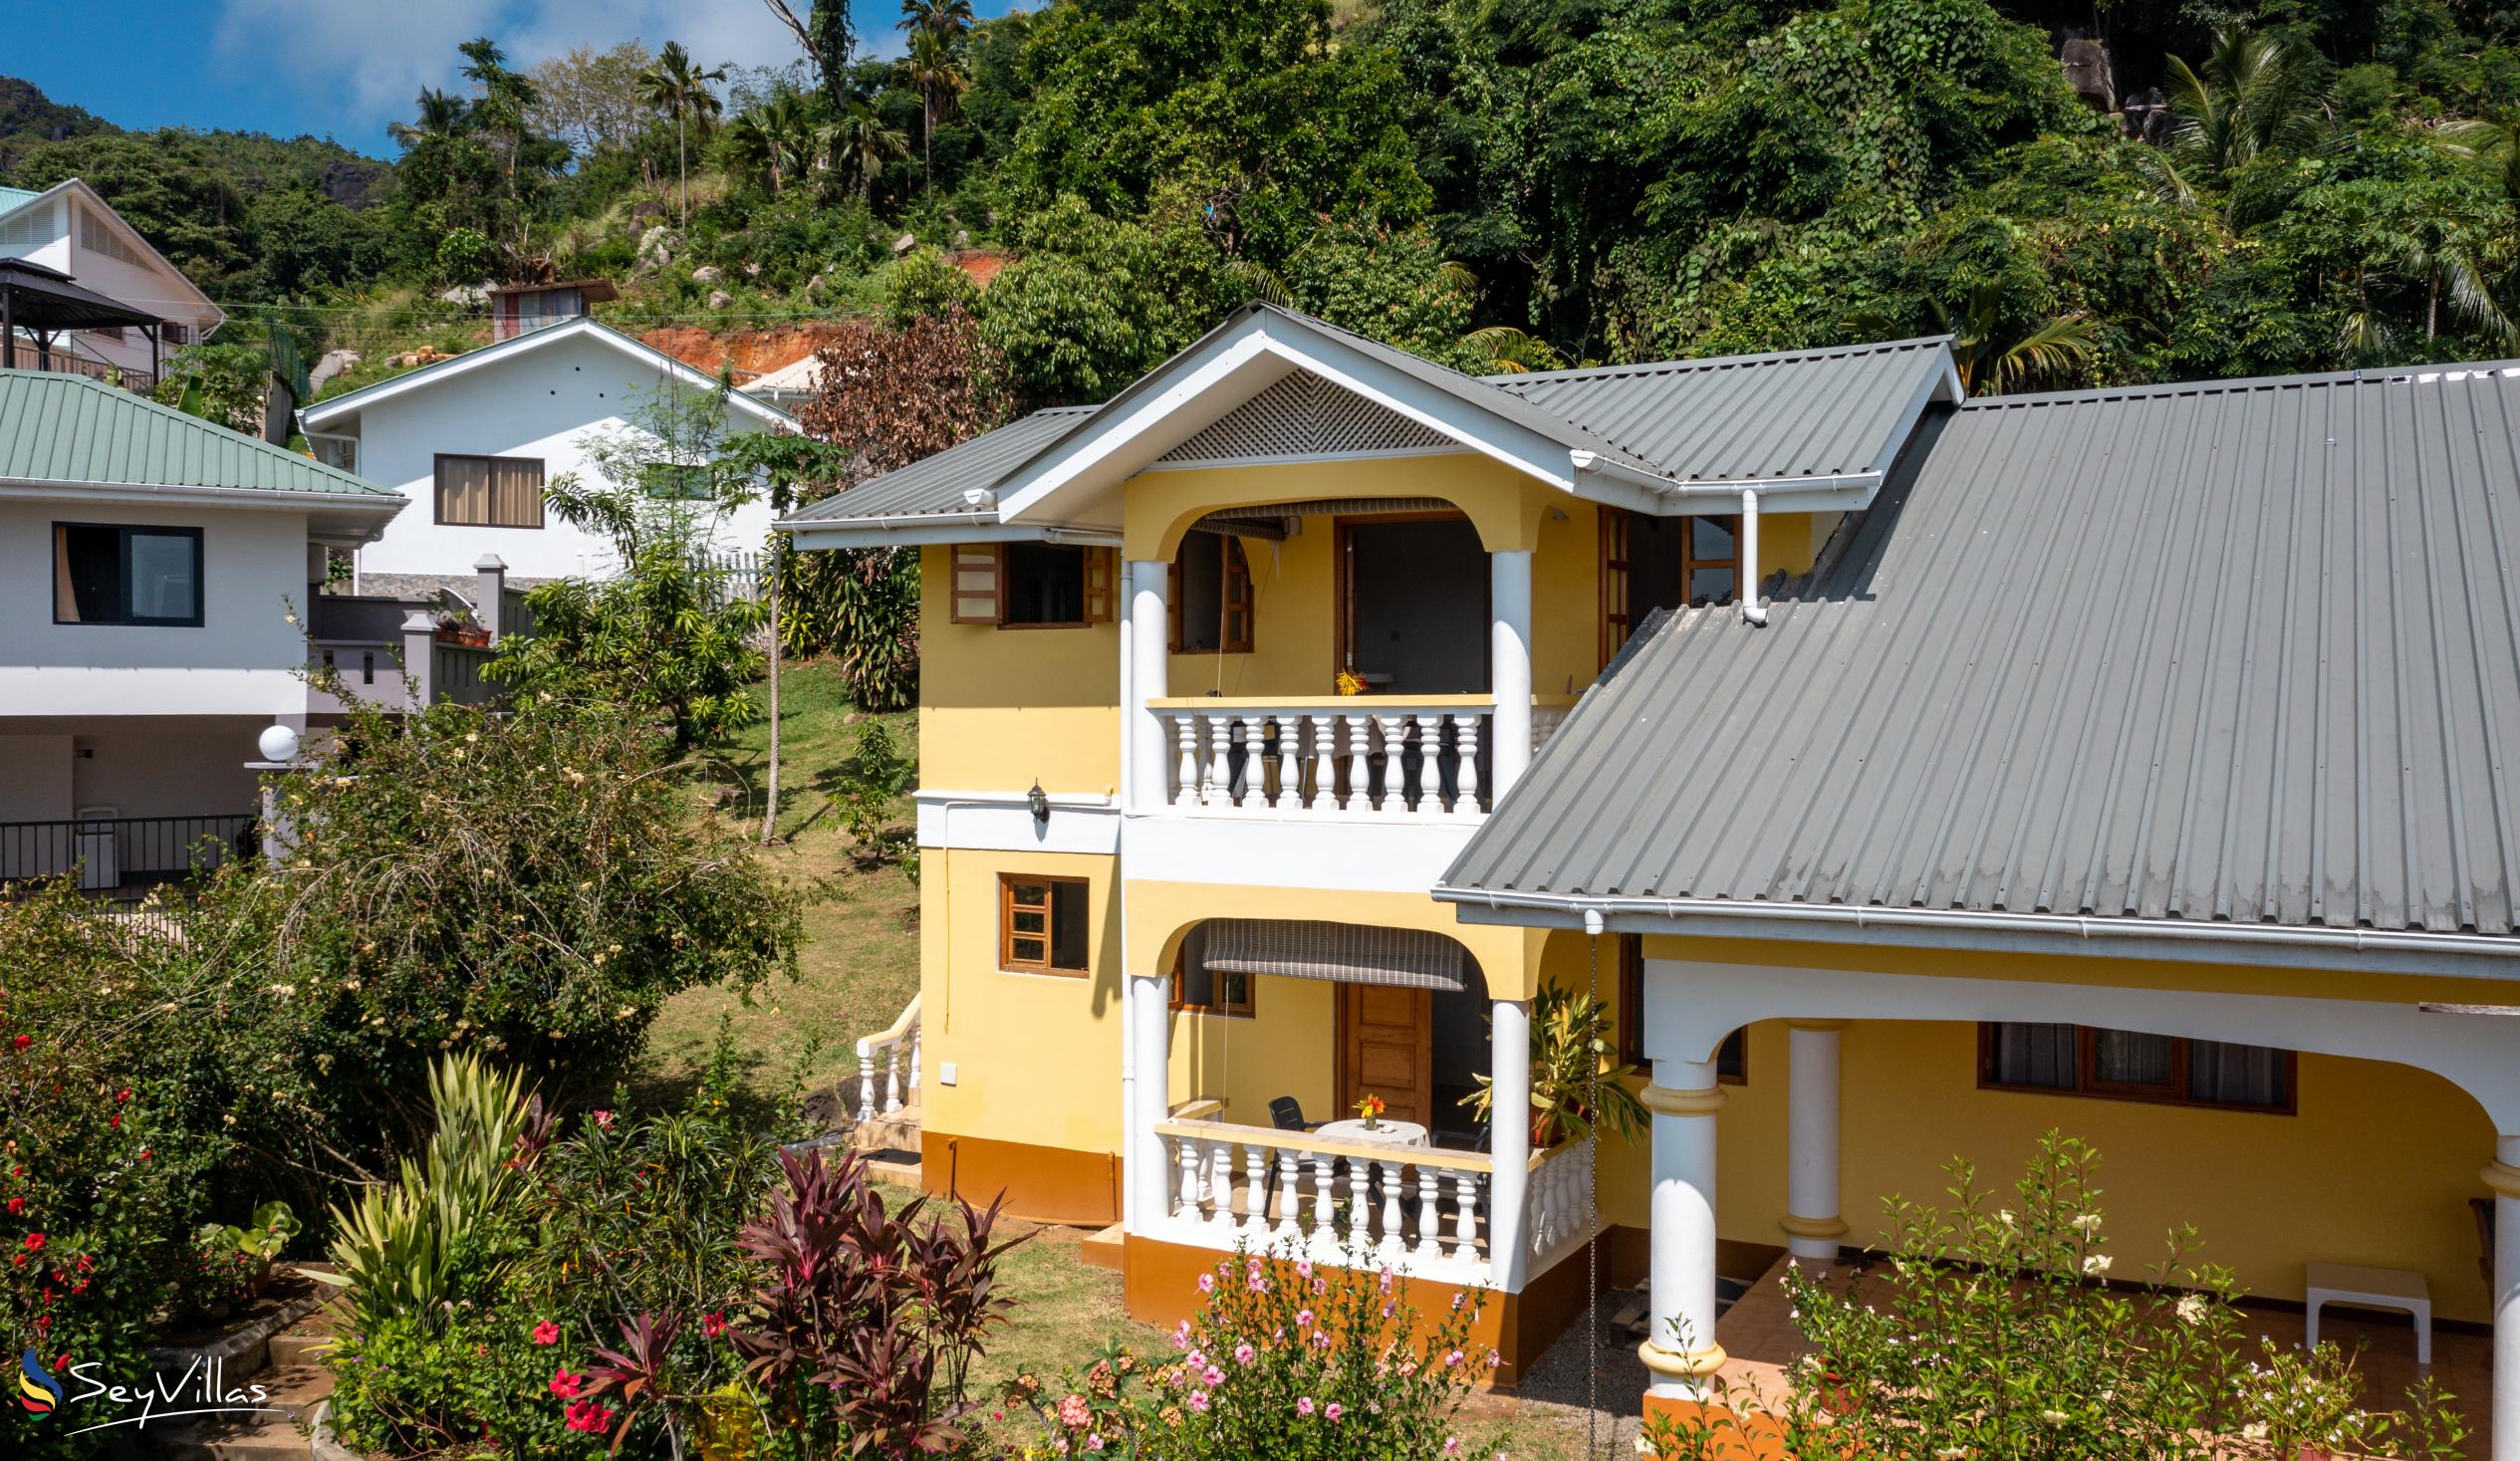 Foto 8: Maison Marikel - Aussenbereich - Mahé (Seychellen)